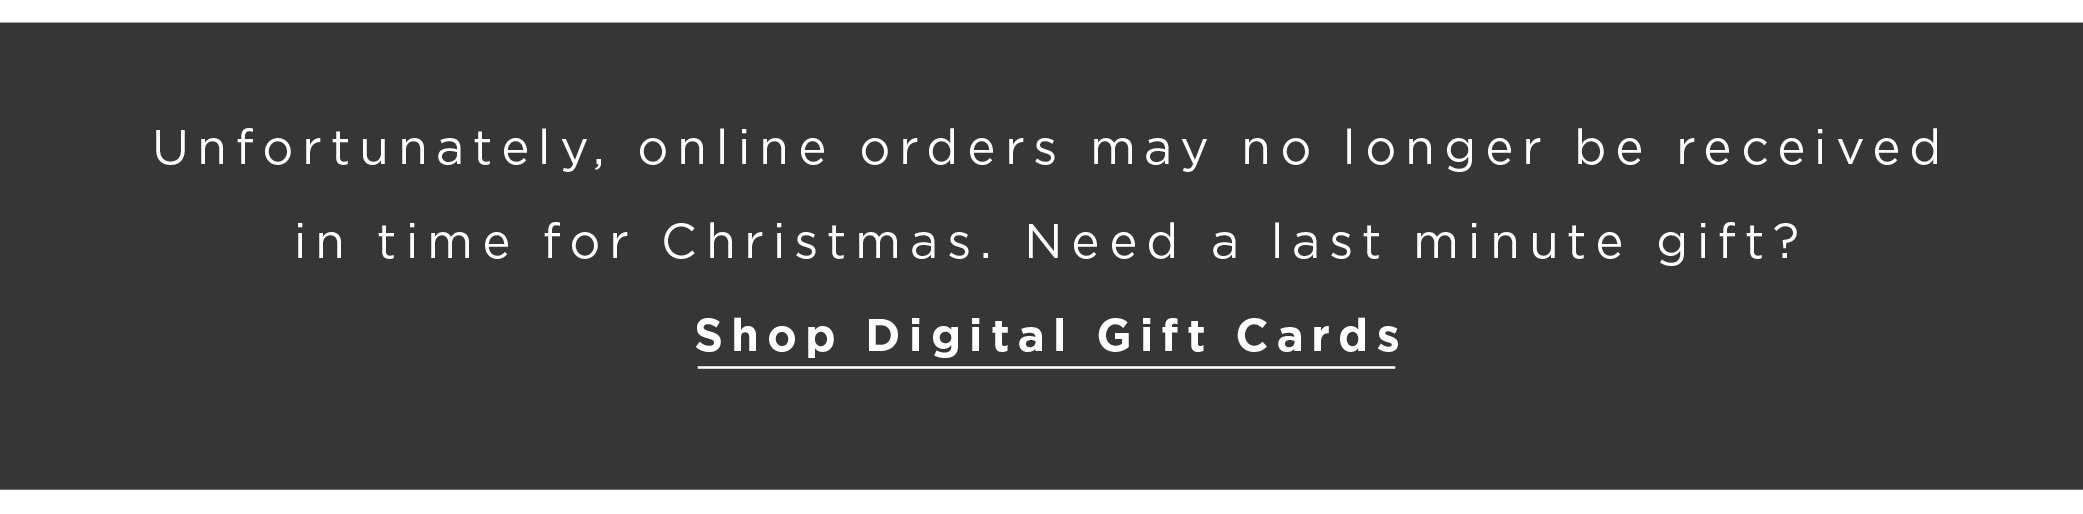 Shop Digital Gift Cards